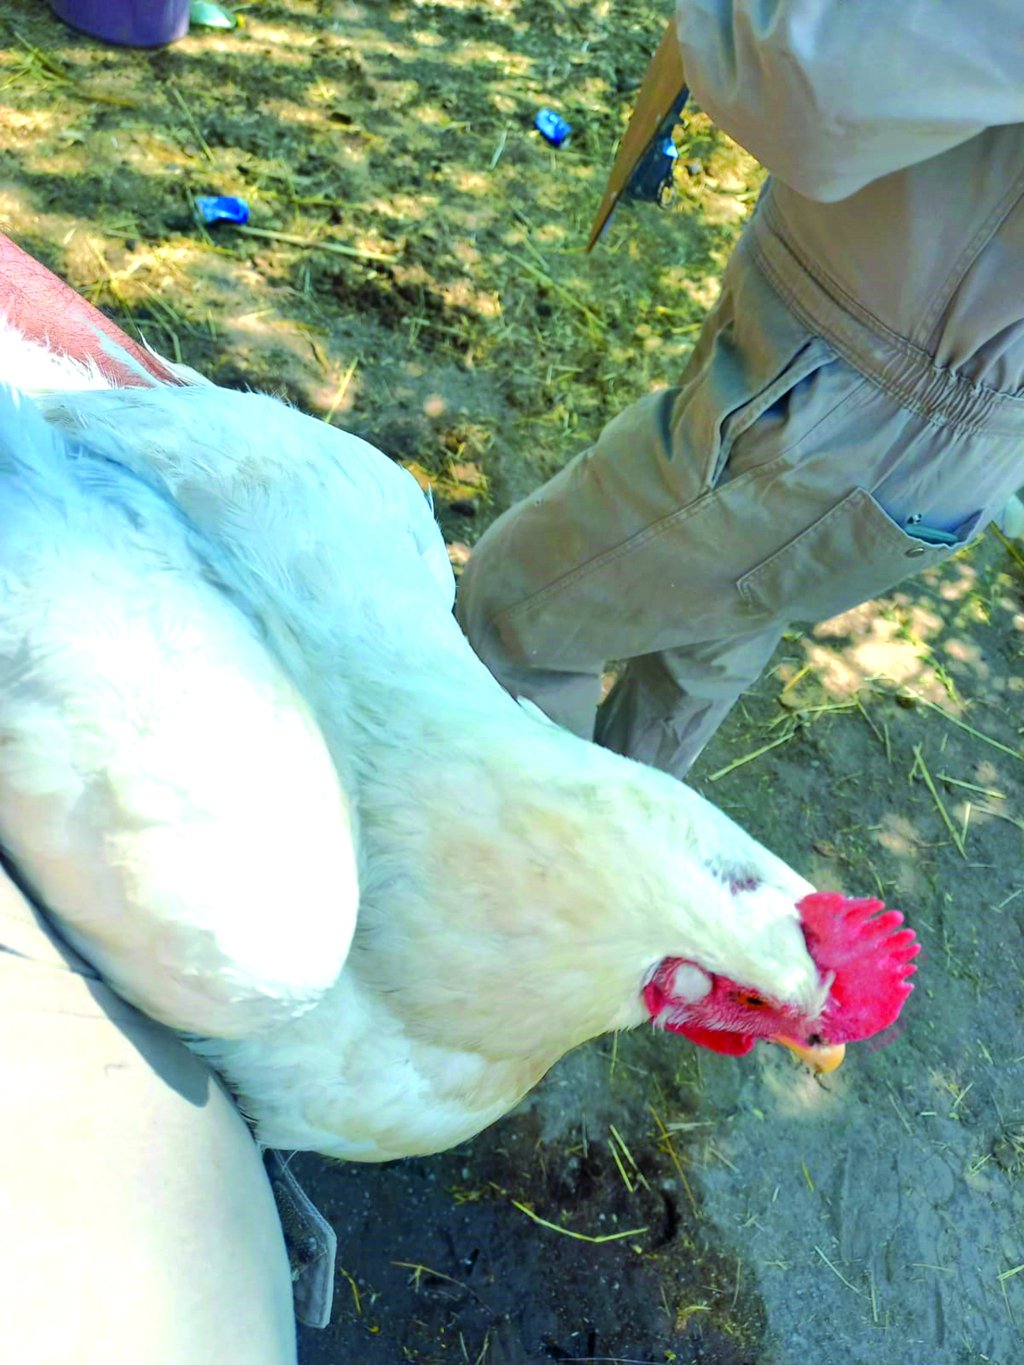 Descartan riesgos por consumir pollo en Durango